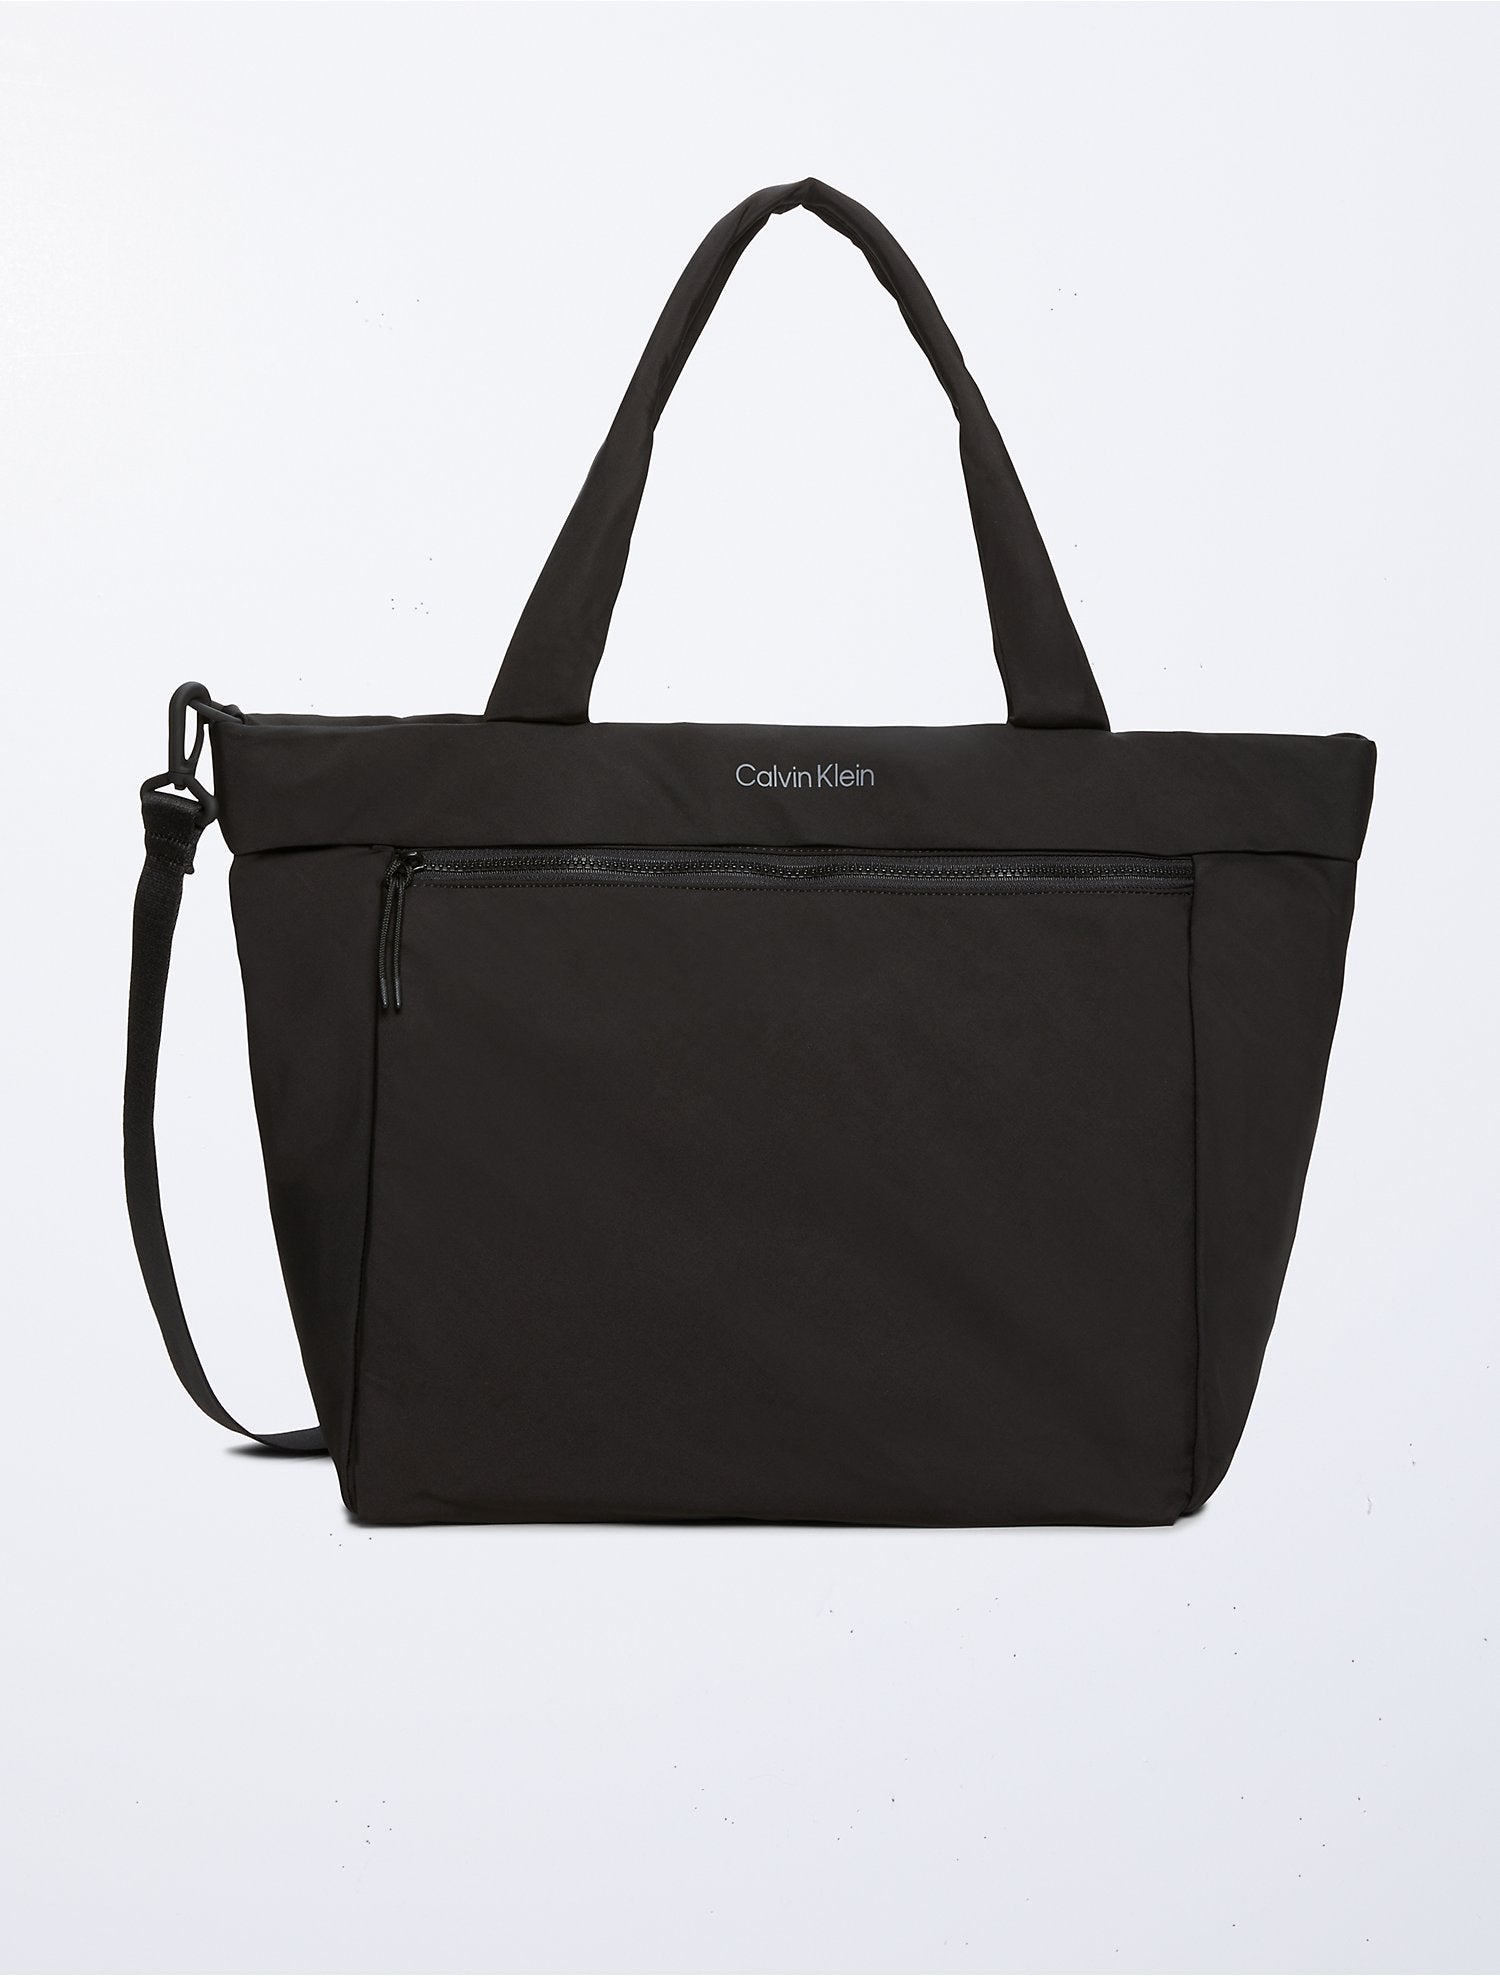 Calvin Klein Nylon Tote Bag, Women's Fashion, Bags & Wallets